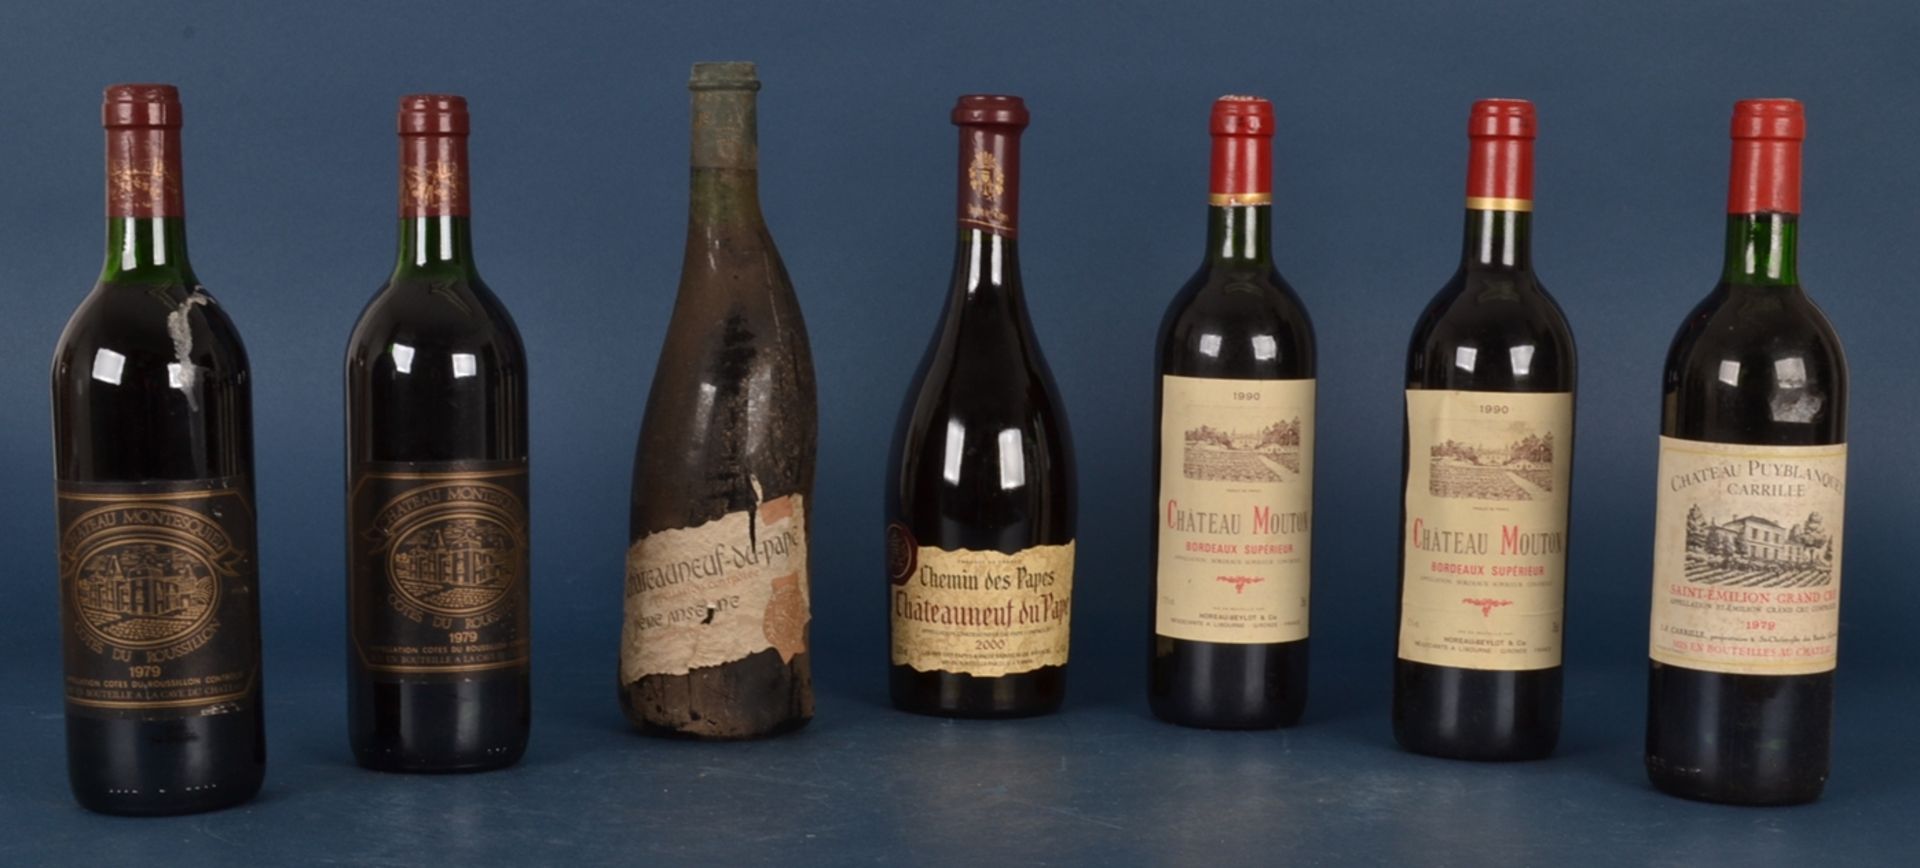 7 französische Flaschen Rotwein: 1x 2000er "Chemin des Papes, Chateauneuf du Pape". 1x 1979er "